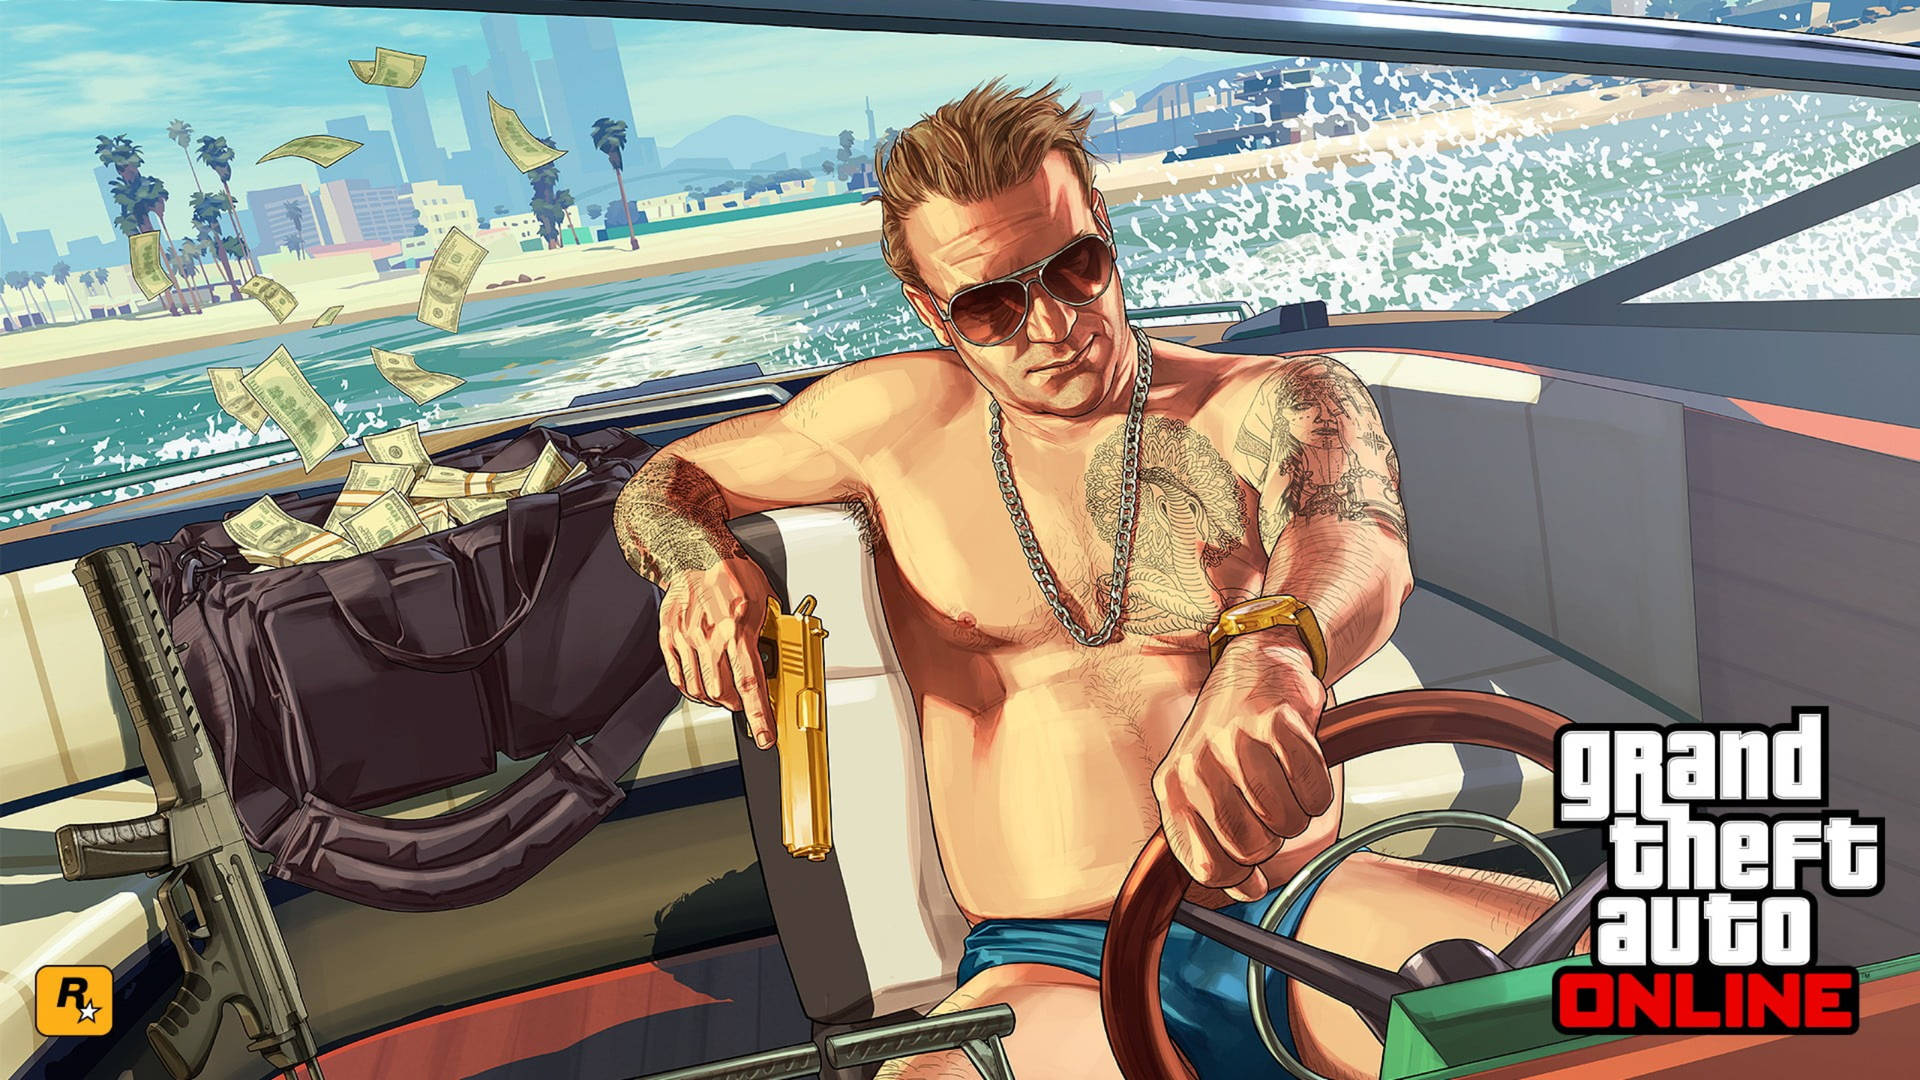 Grand Theft Auto Online på båd. Wallpaper